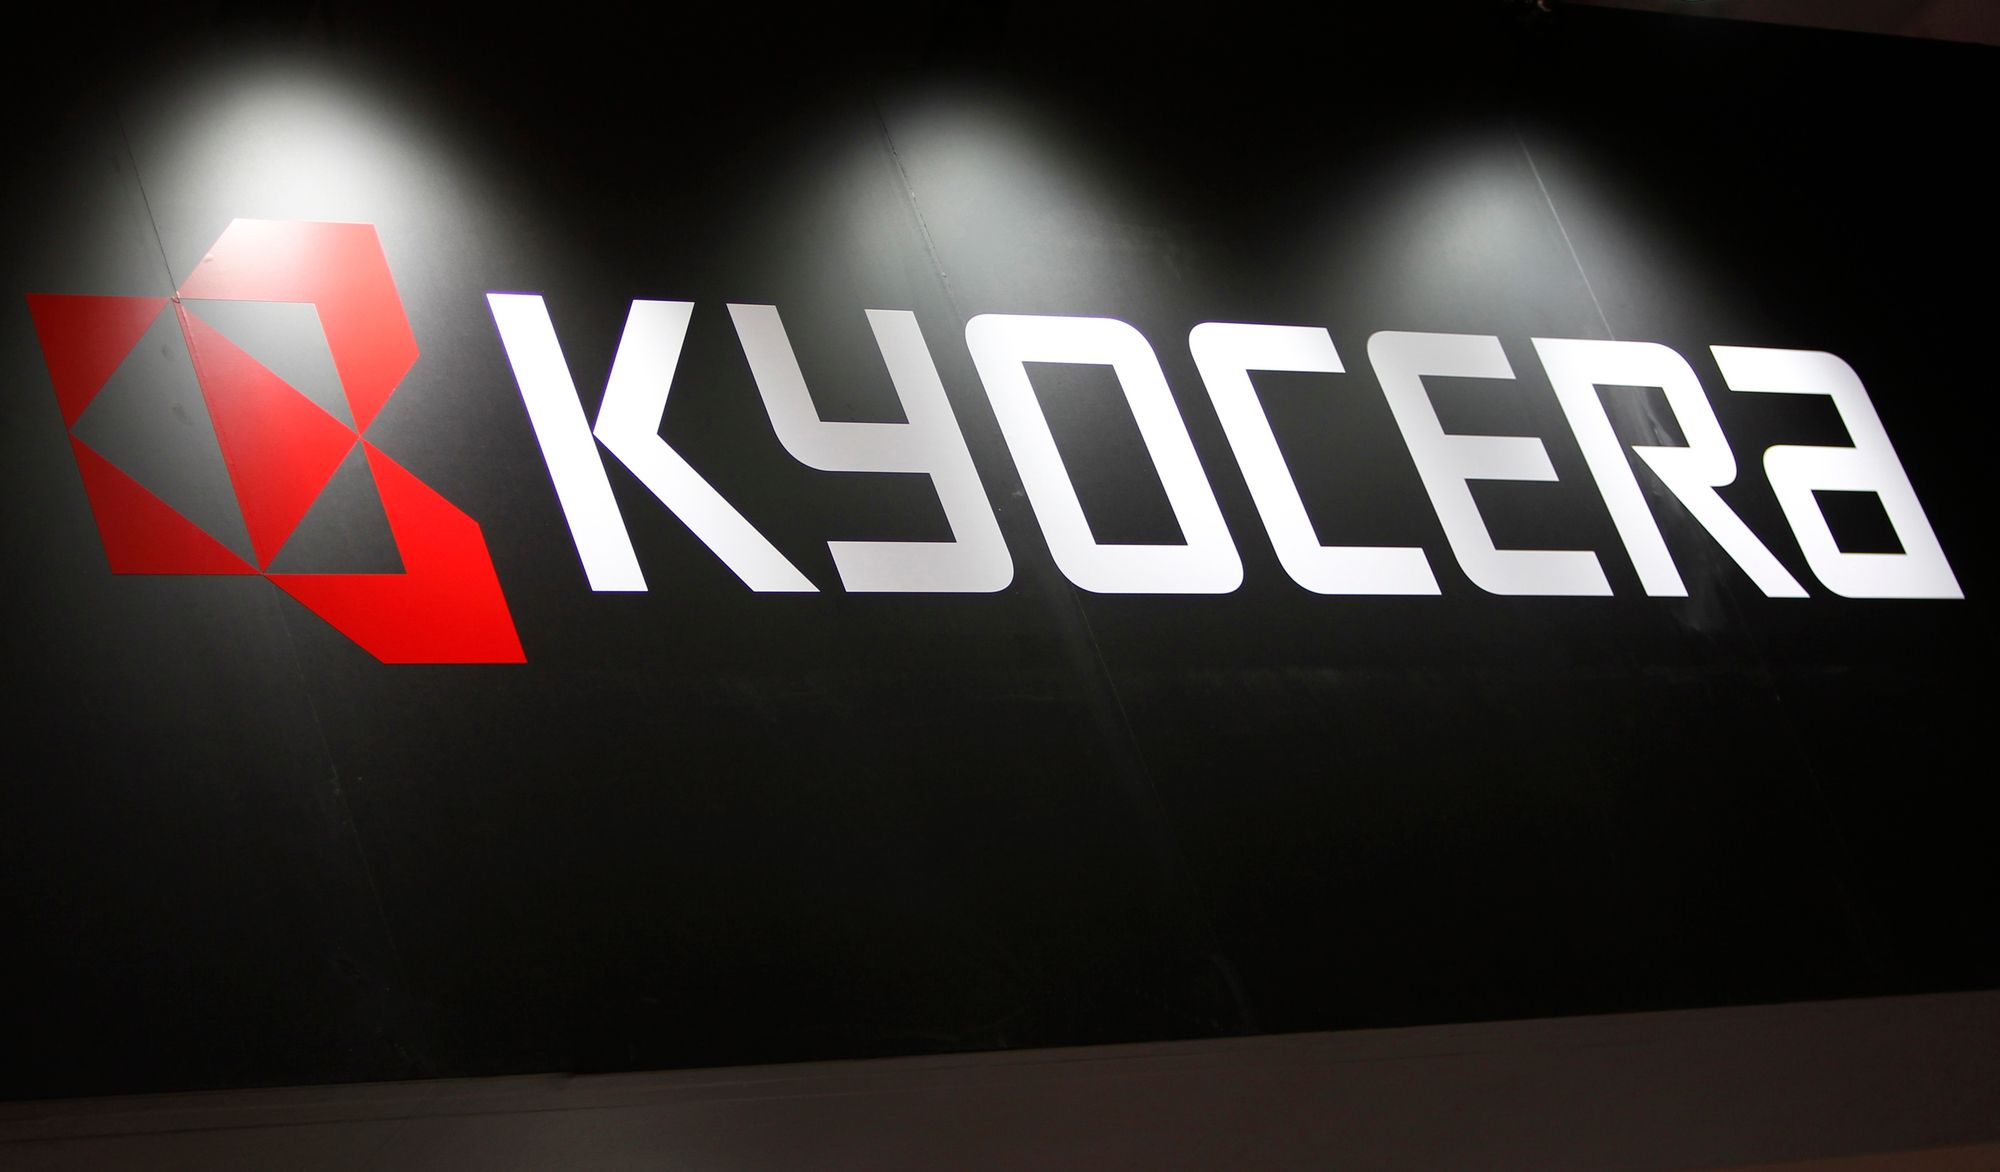 Kyocera прекращает выпуск мобильных телефонов